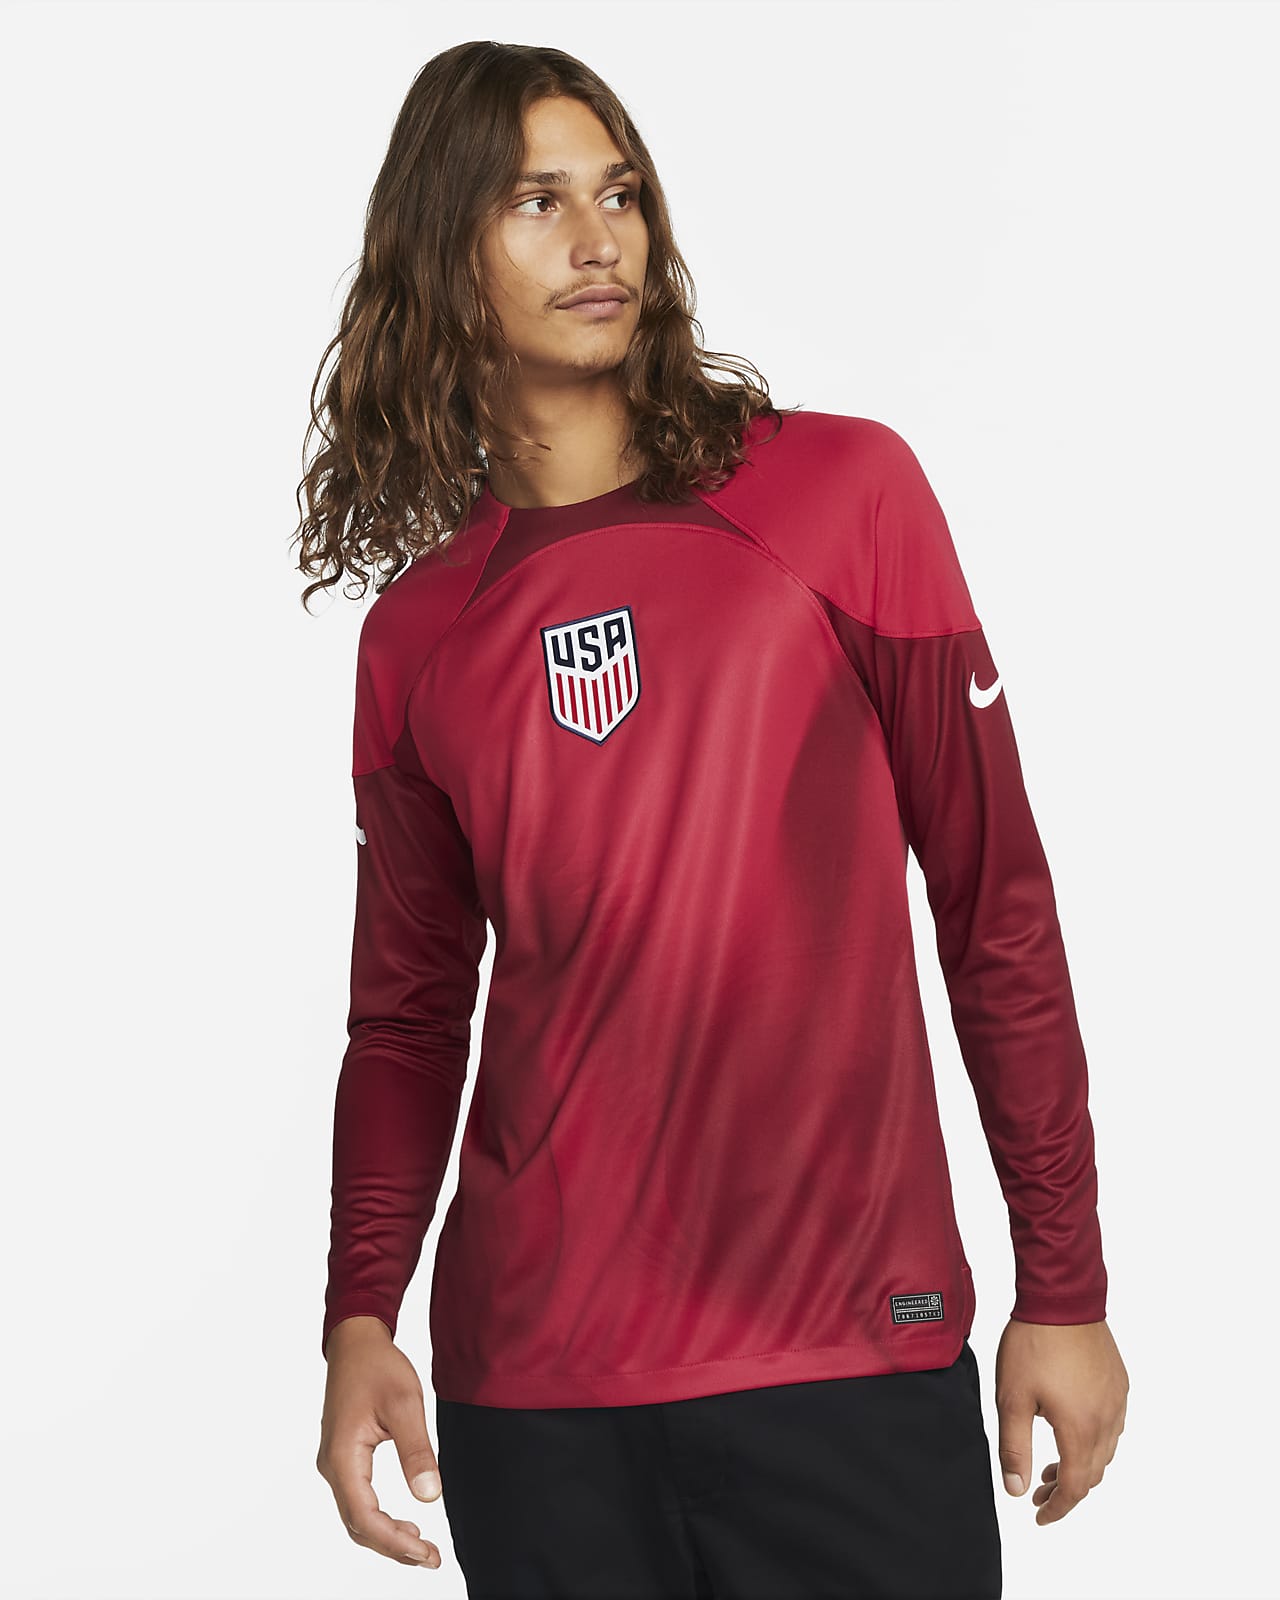 U.S. 2022/23 Stadium Goalkeeper Nike Dri-FIT Soccer Jersey.